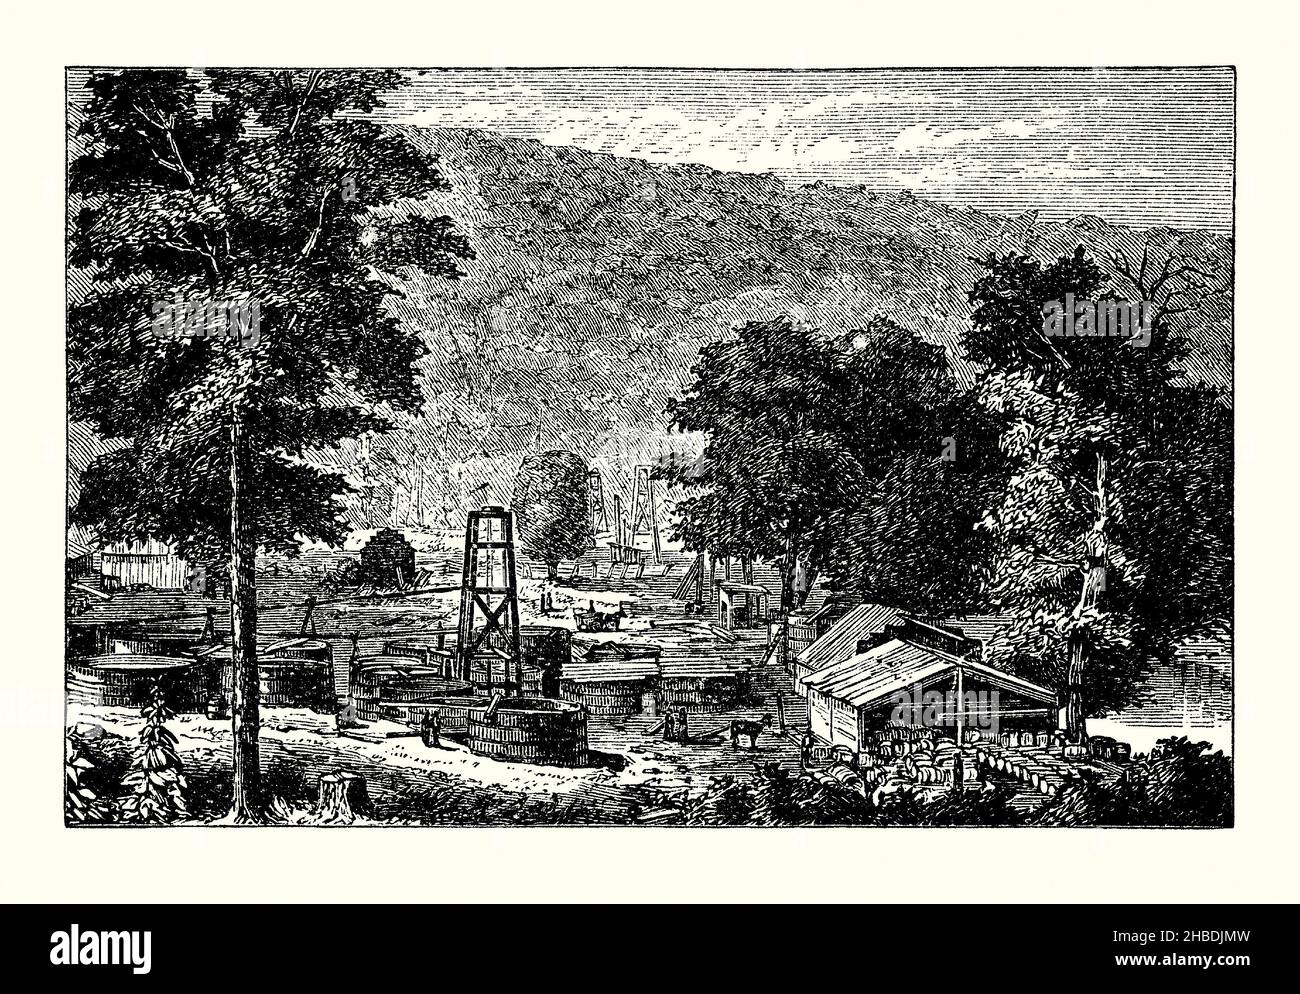 Une ancienne gravure de puits de pétrole sur Hyde et Egbert's Farm, Oil Creek, Pennsylvanie, Etats-Unis vers 1860.Il est tiré d'un livre victorien du 1890s sur les découvertes et les inventions pendant le 1800s.Les derricks en bois et les conteneurs pour l'huile sont au centre après que l'huile a été découverte le long de la vallée de la rivière Alleghany au nord de Pittsburg.La propriété d’Alexander Davidson finit par être la ferme Hyde et Egbert lorsque les deux frères Egbert ont mis un acompte sur la ferme en 1860.Alexander est mort et son épouse a négocié une douzième redevance pour le pétrole sur la ferme de 38 acres en 1862. Banque D'Images